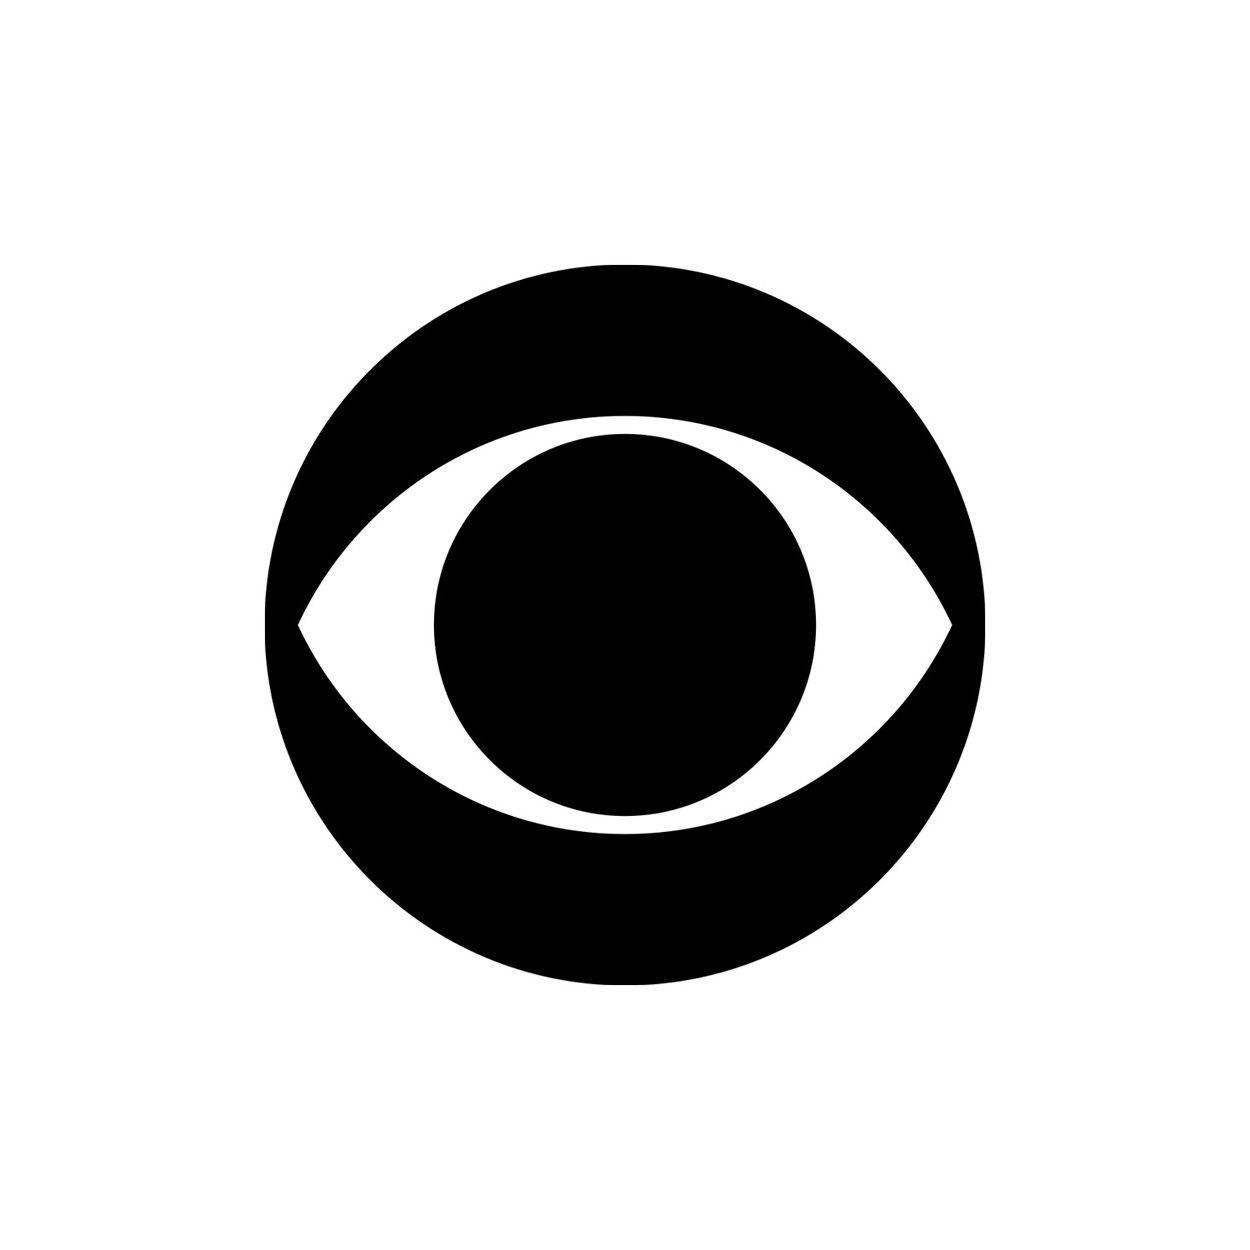 CBS logo by William Golden, 1951